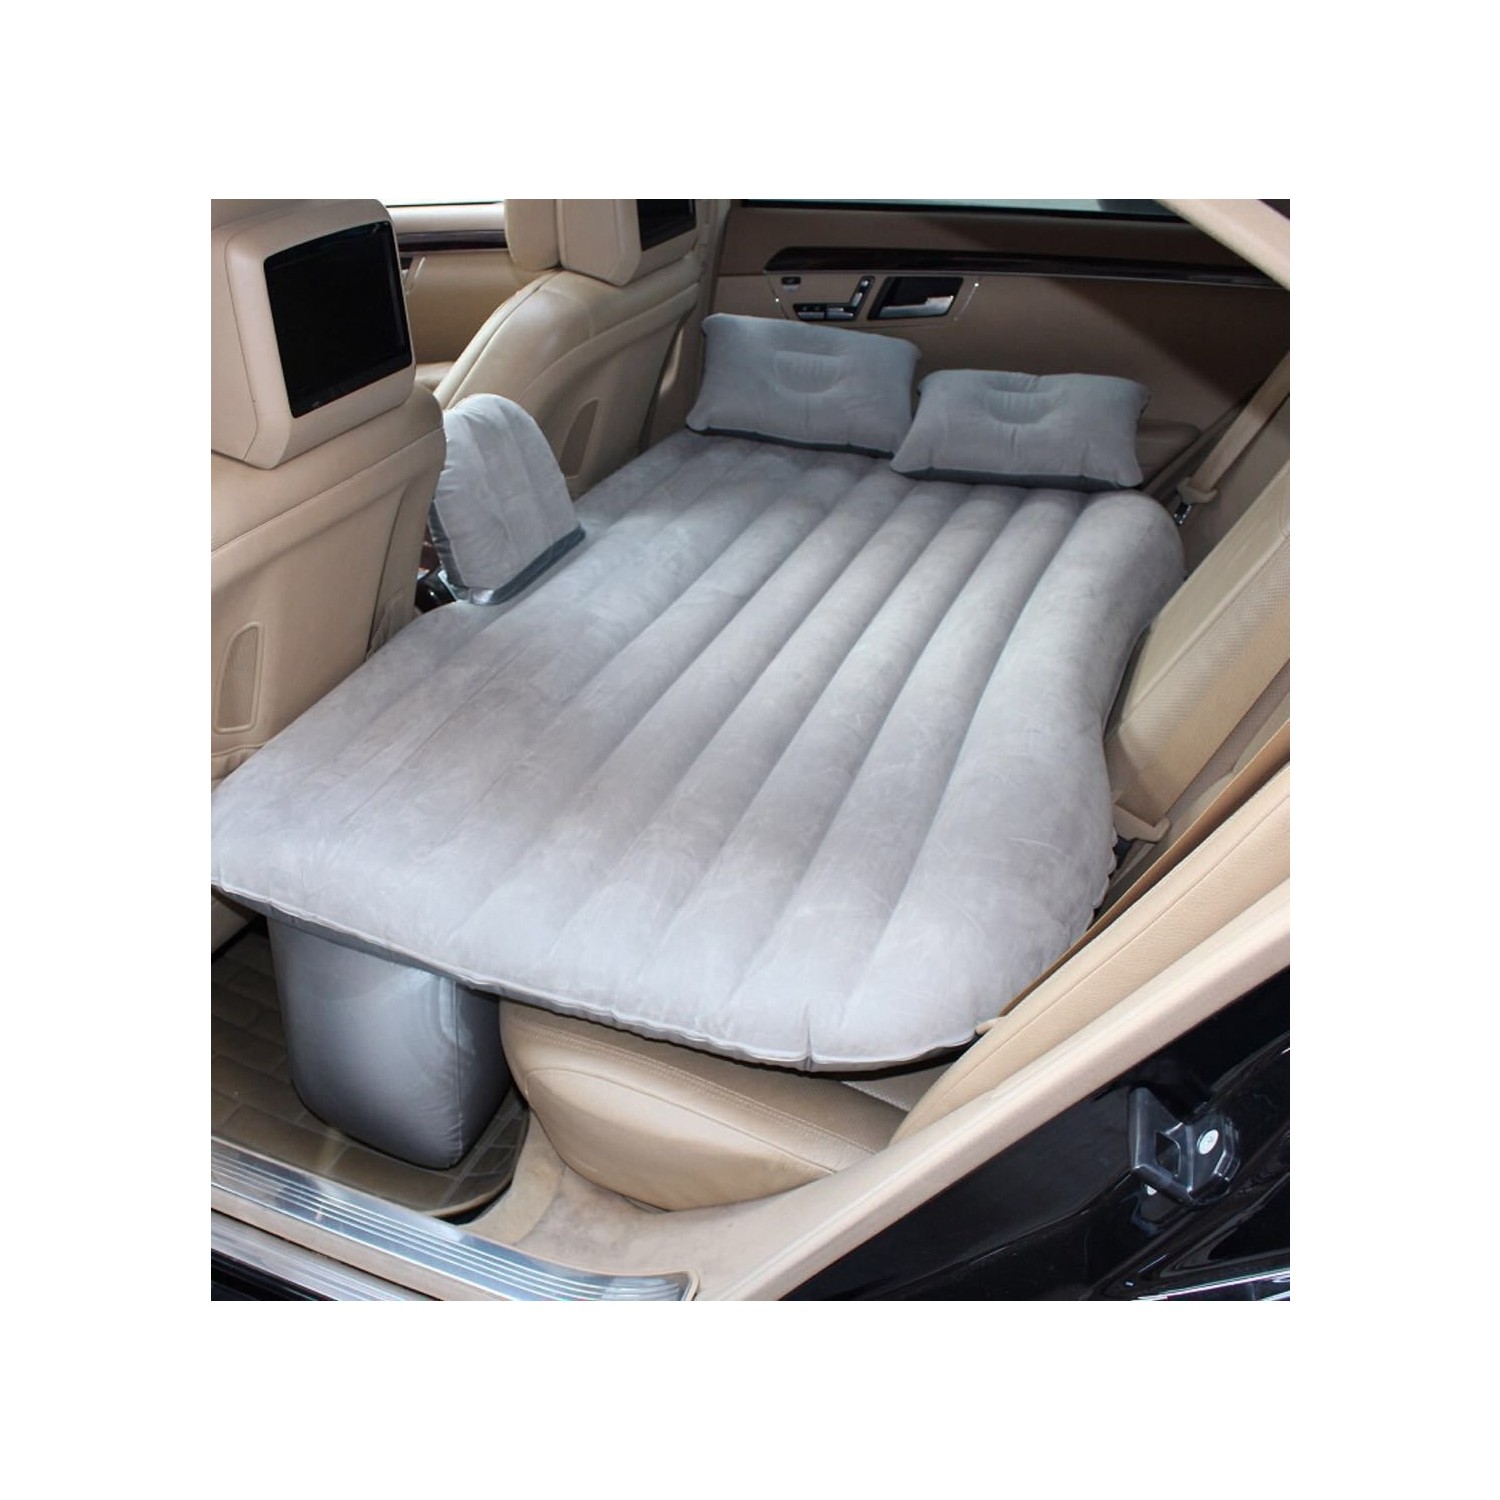 Sge Araç İçi Şişme Yatak Araç Yatağı Araba Yatağı + Şişirme Fiyatı